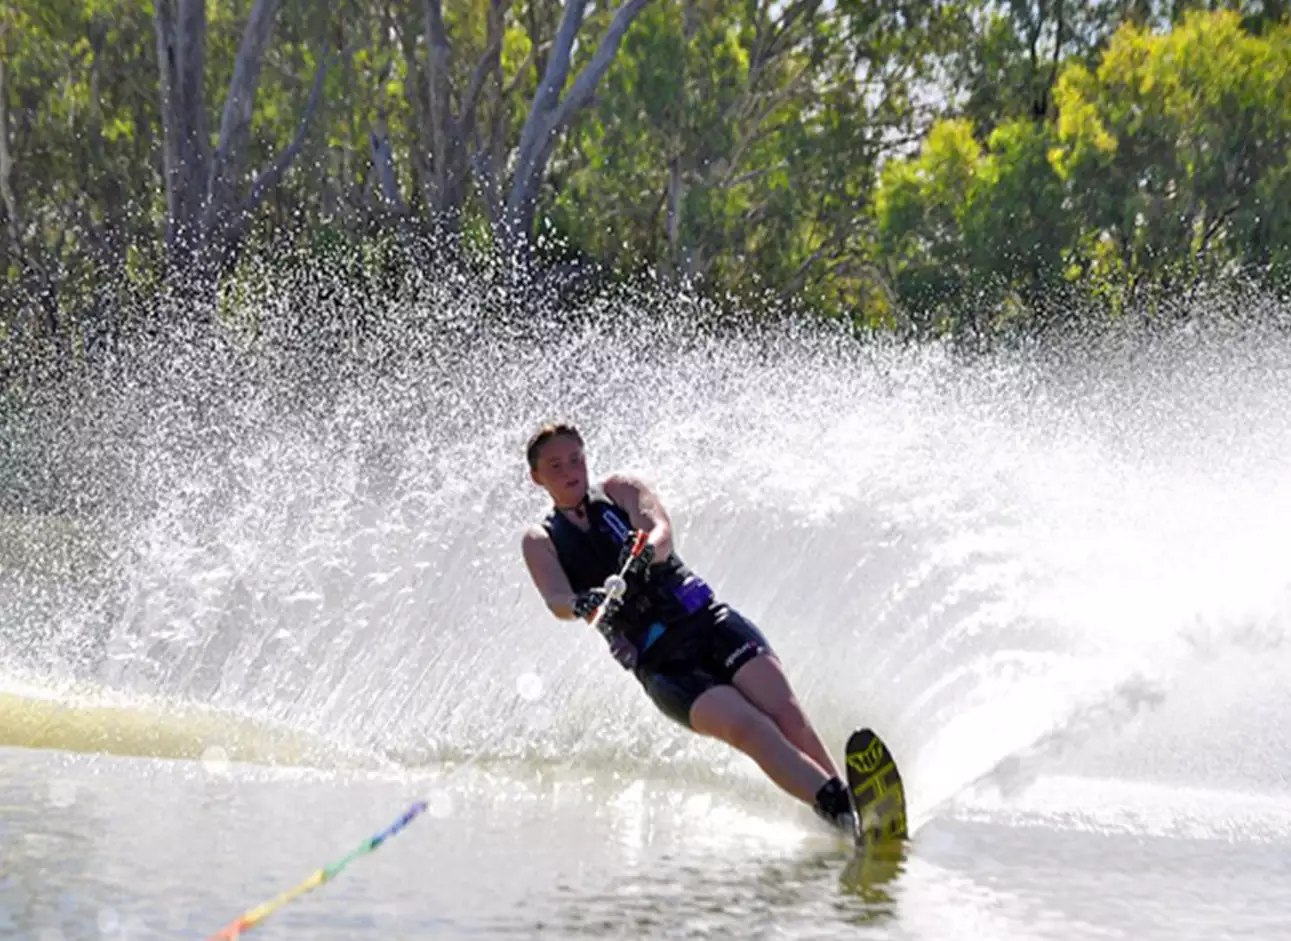 Water Skiing - Enjoy exhilarating rides on water